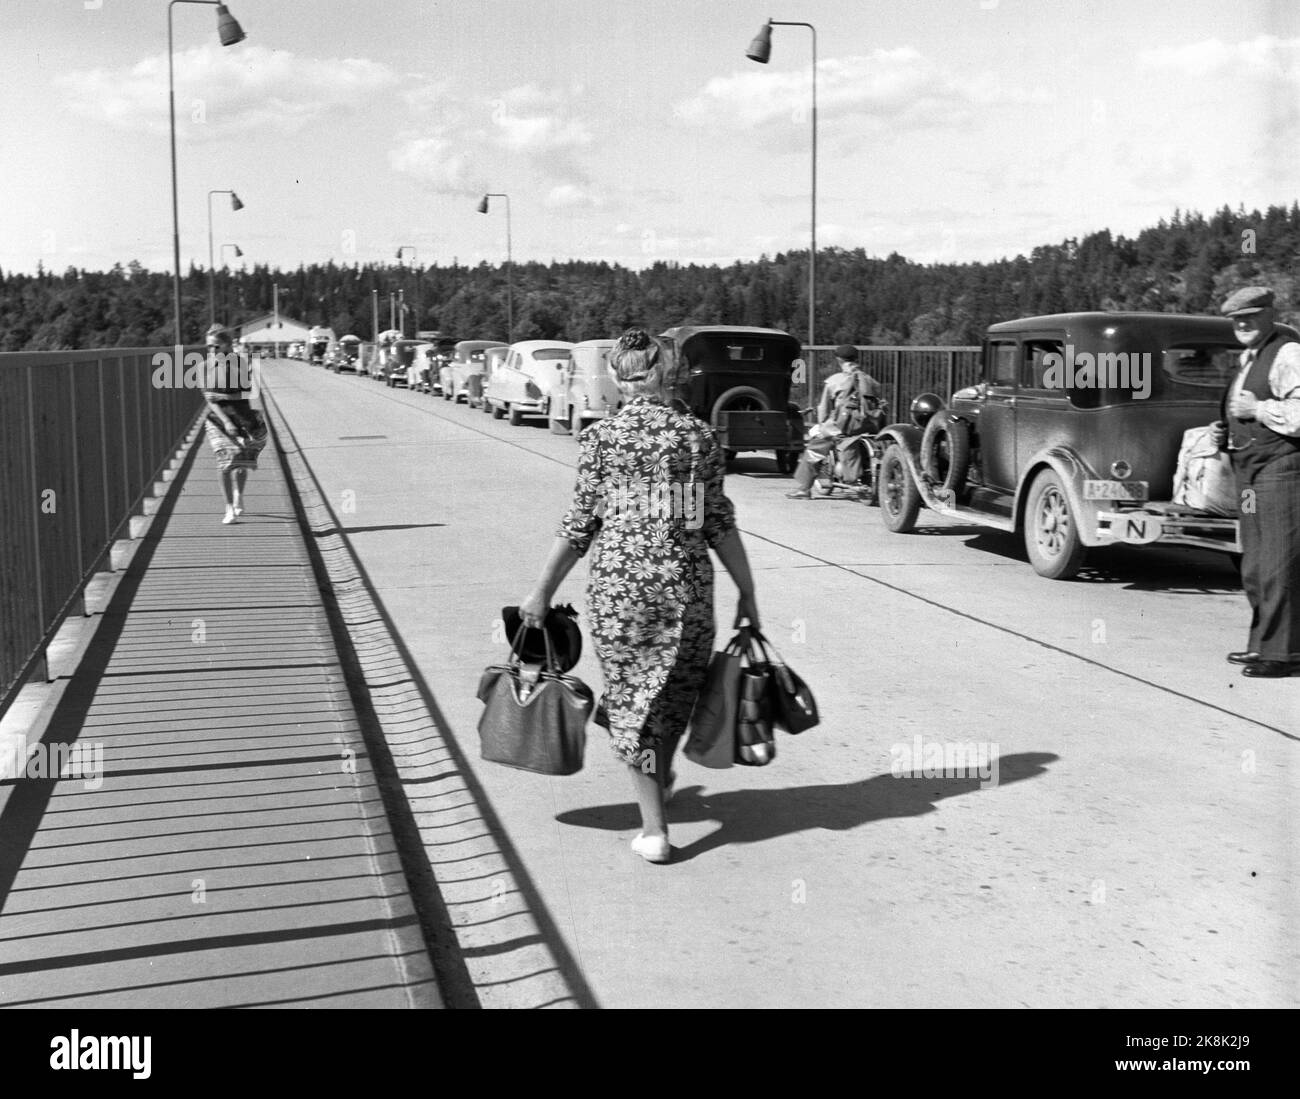 Svinesund 1952 ; fièvre du sucre ! Les Norvégiens n'ont jamais traversé la crique pour de l'eau, mais souvent au-dessus de la quille pour d'autres marchandises. Dans la période d'après-guerre, le sucre était un bien attendu depuis longtemps, car il était rationné jusqu'en 1952. Lorsqu'il a été autorisé à importer 10 kilos de sucre par voyageur, le commerce frontalier a explosé. Les automobilistes norvégiens ont rempli la voiture de '' sucrier les enfants '' qui valait leur poids dans, sinon l'or, donc au moins dans le sucre! Cette femme de ménage porte les sacs pleins et la robe florale typique. Photo; Sverre A. Børretzen / actuel / NTB Banque D'Images